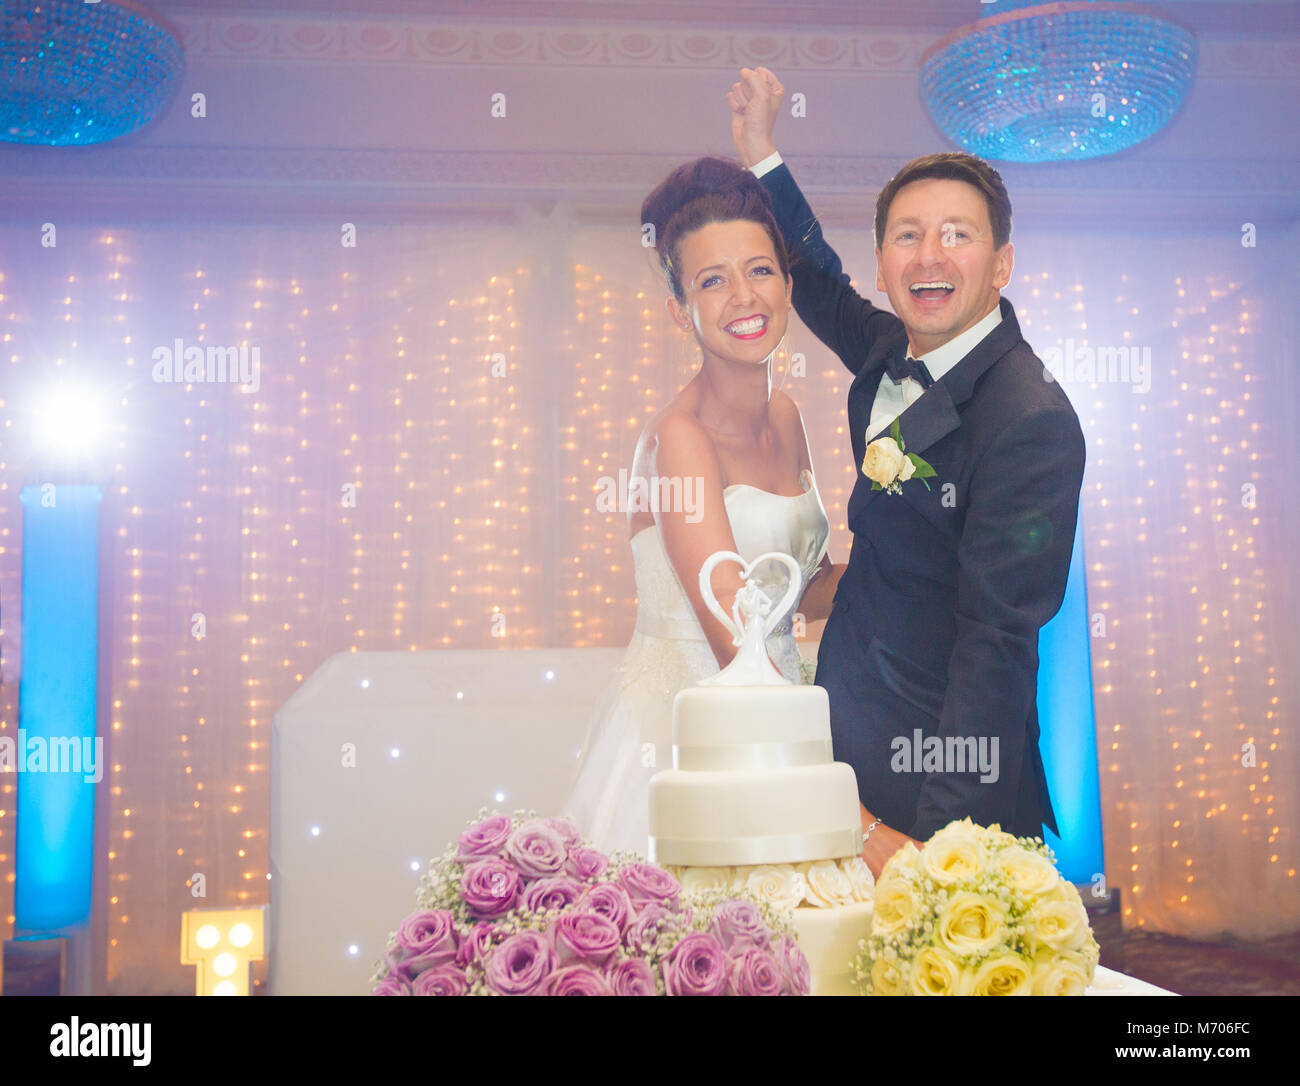 La novia y el novio sonriente cortando el pastel de bodas en el día de su boda Foto de stock